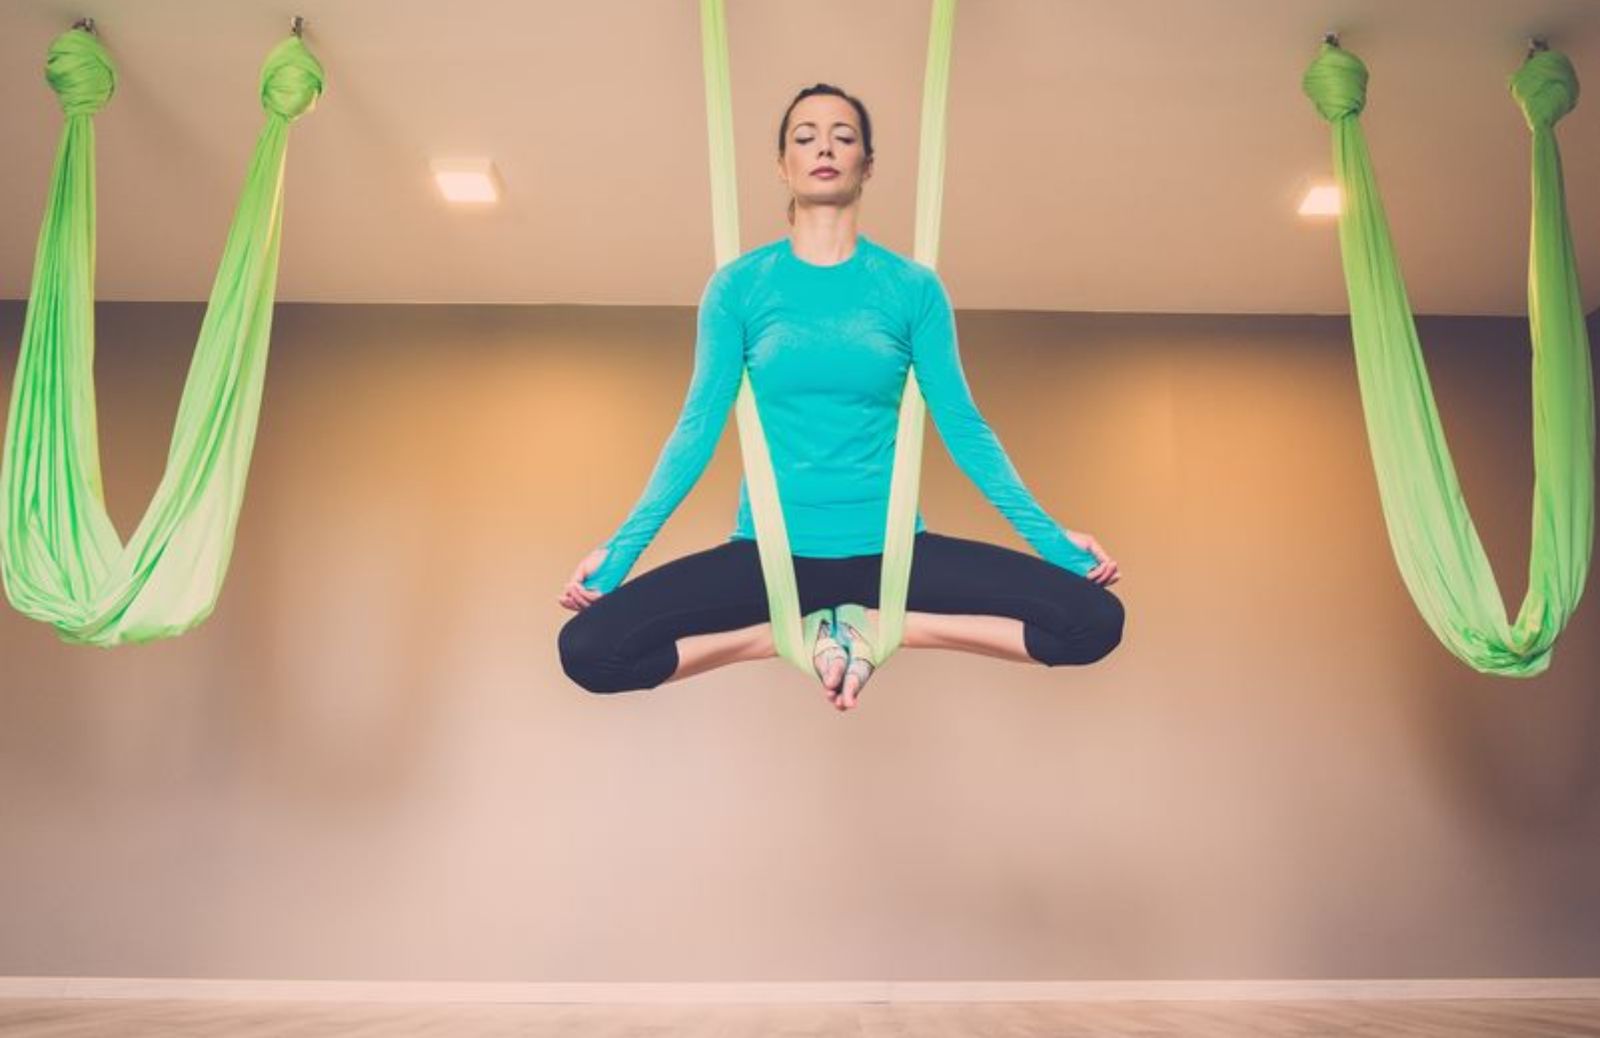 Aerial hammock: la disciplina che unisce yoga e antigravità